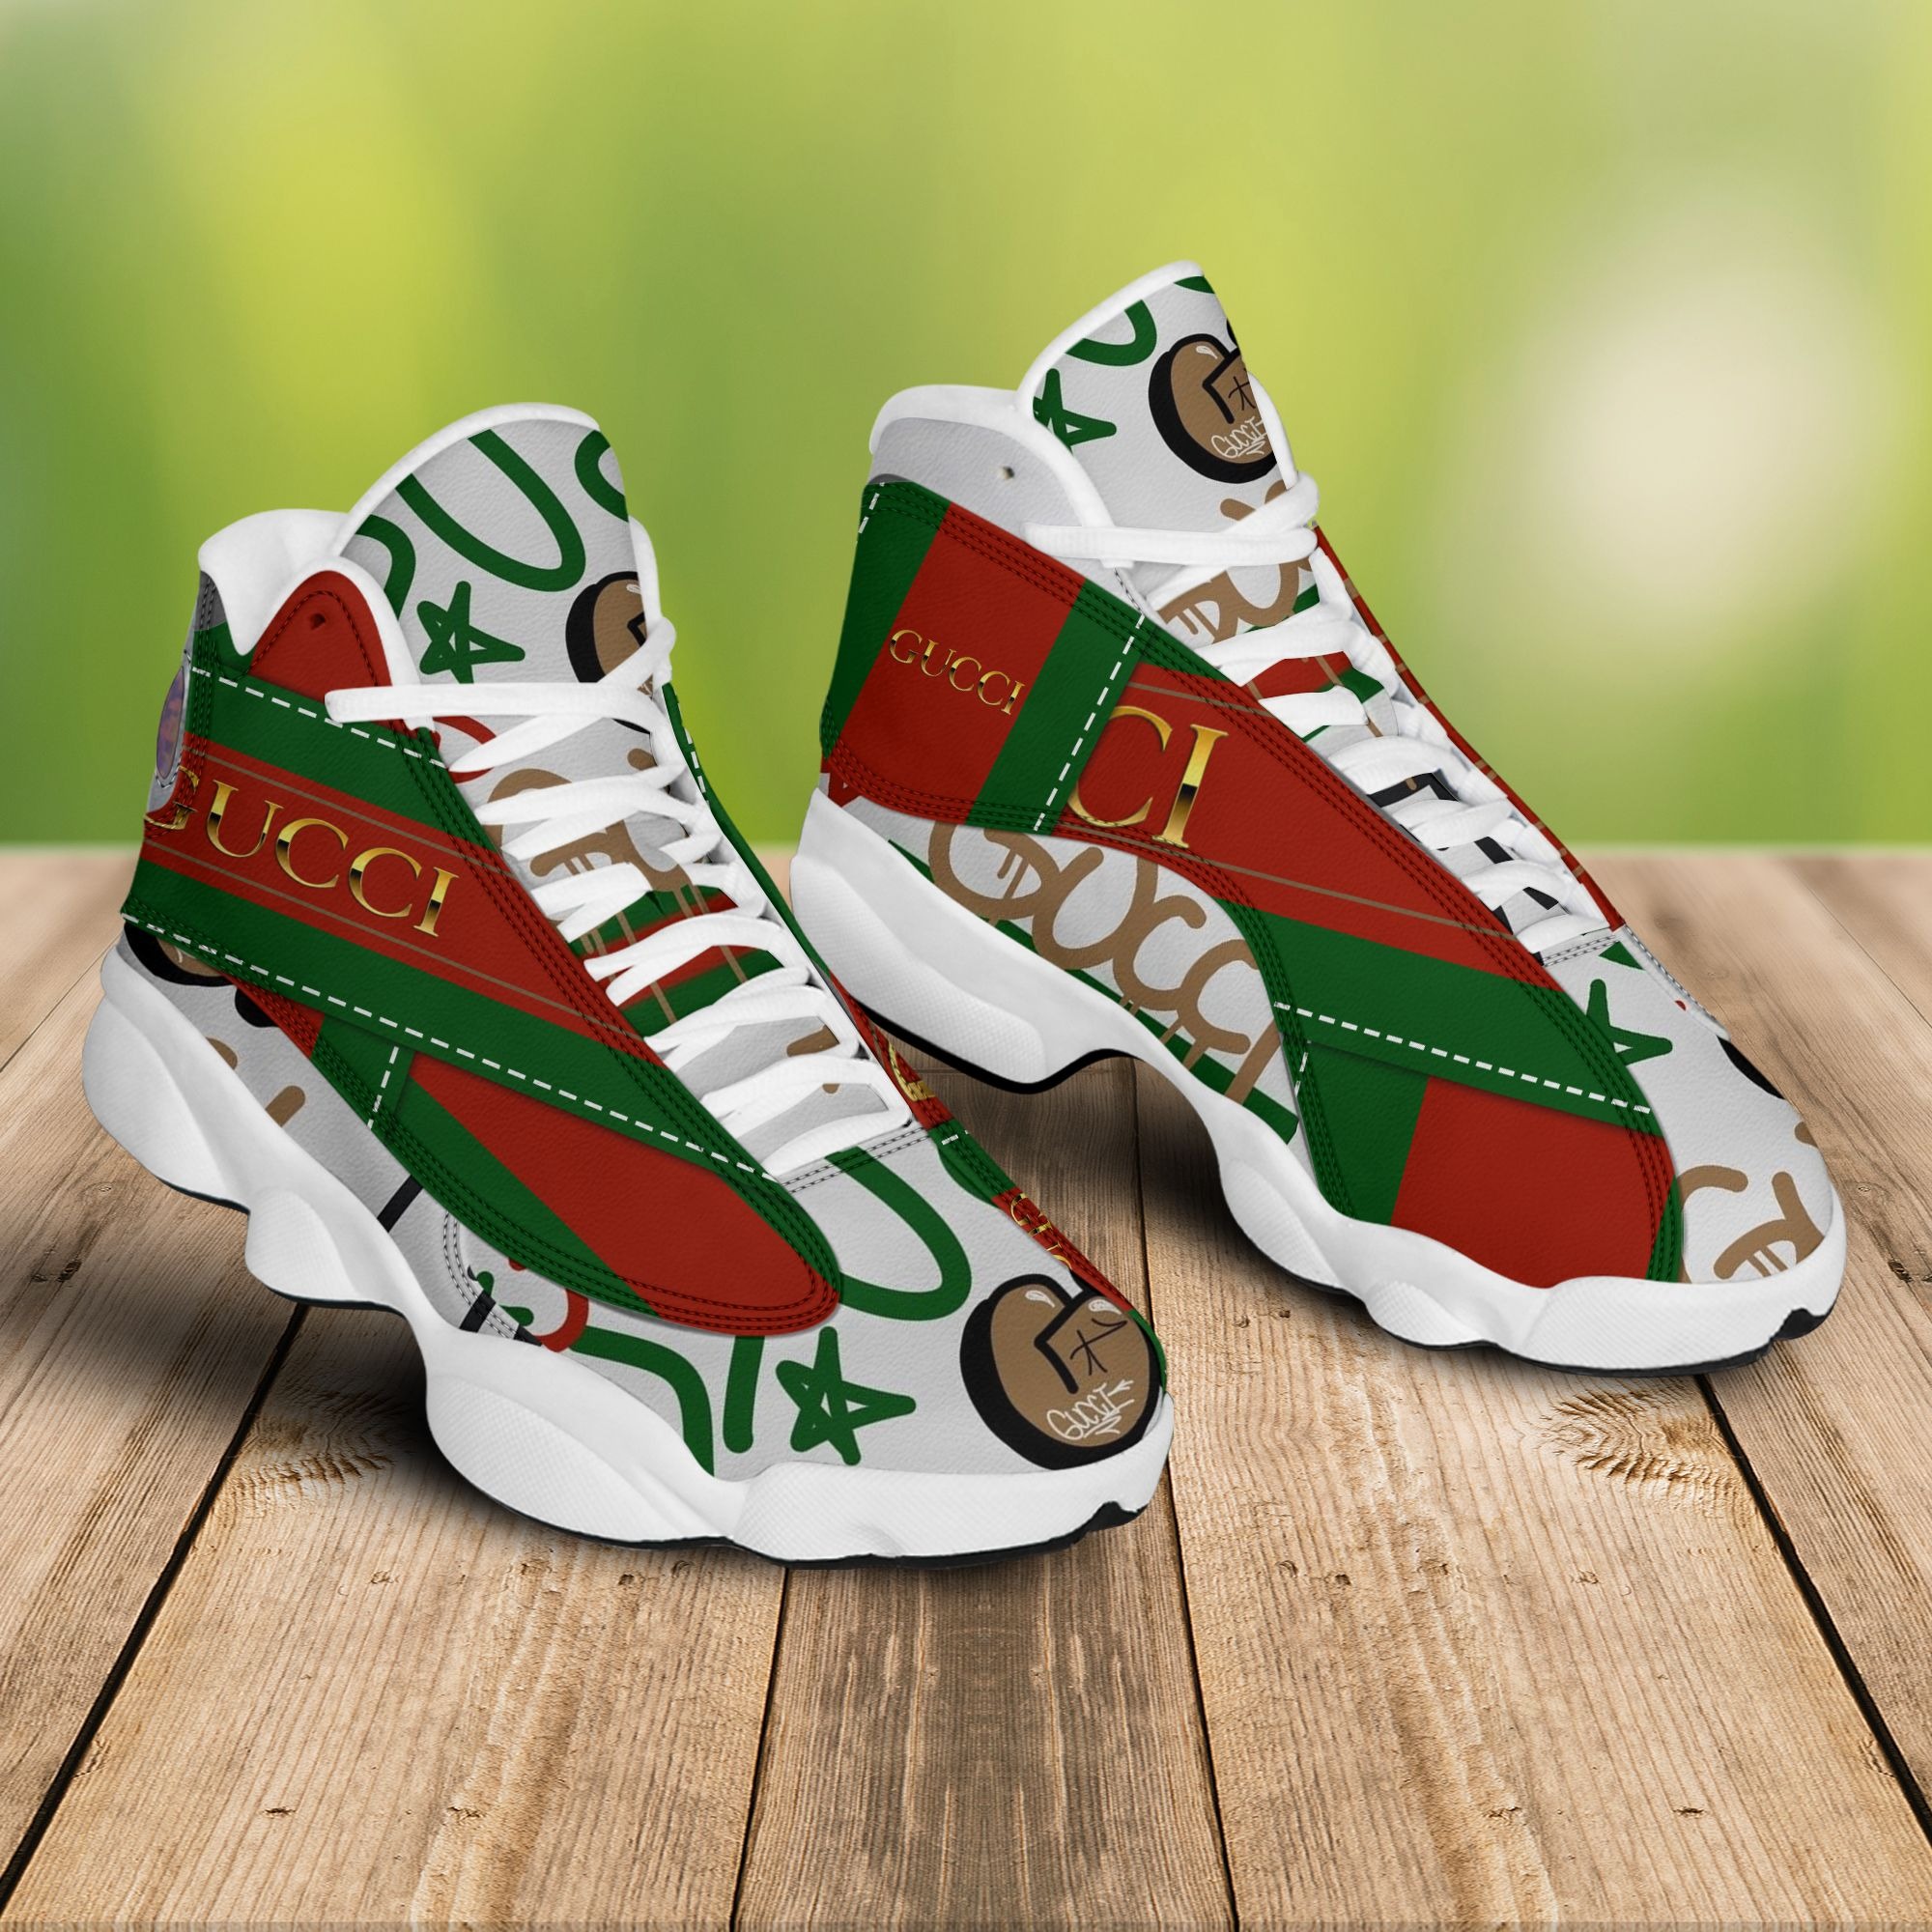 Gucci Air Jordan 13 Sneaker JD14080 – Let the colors inspire you!